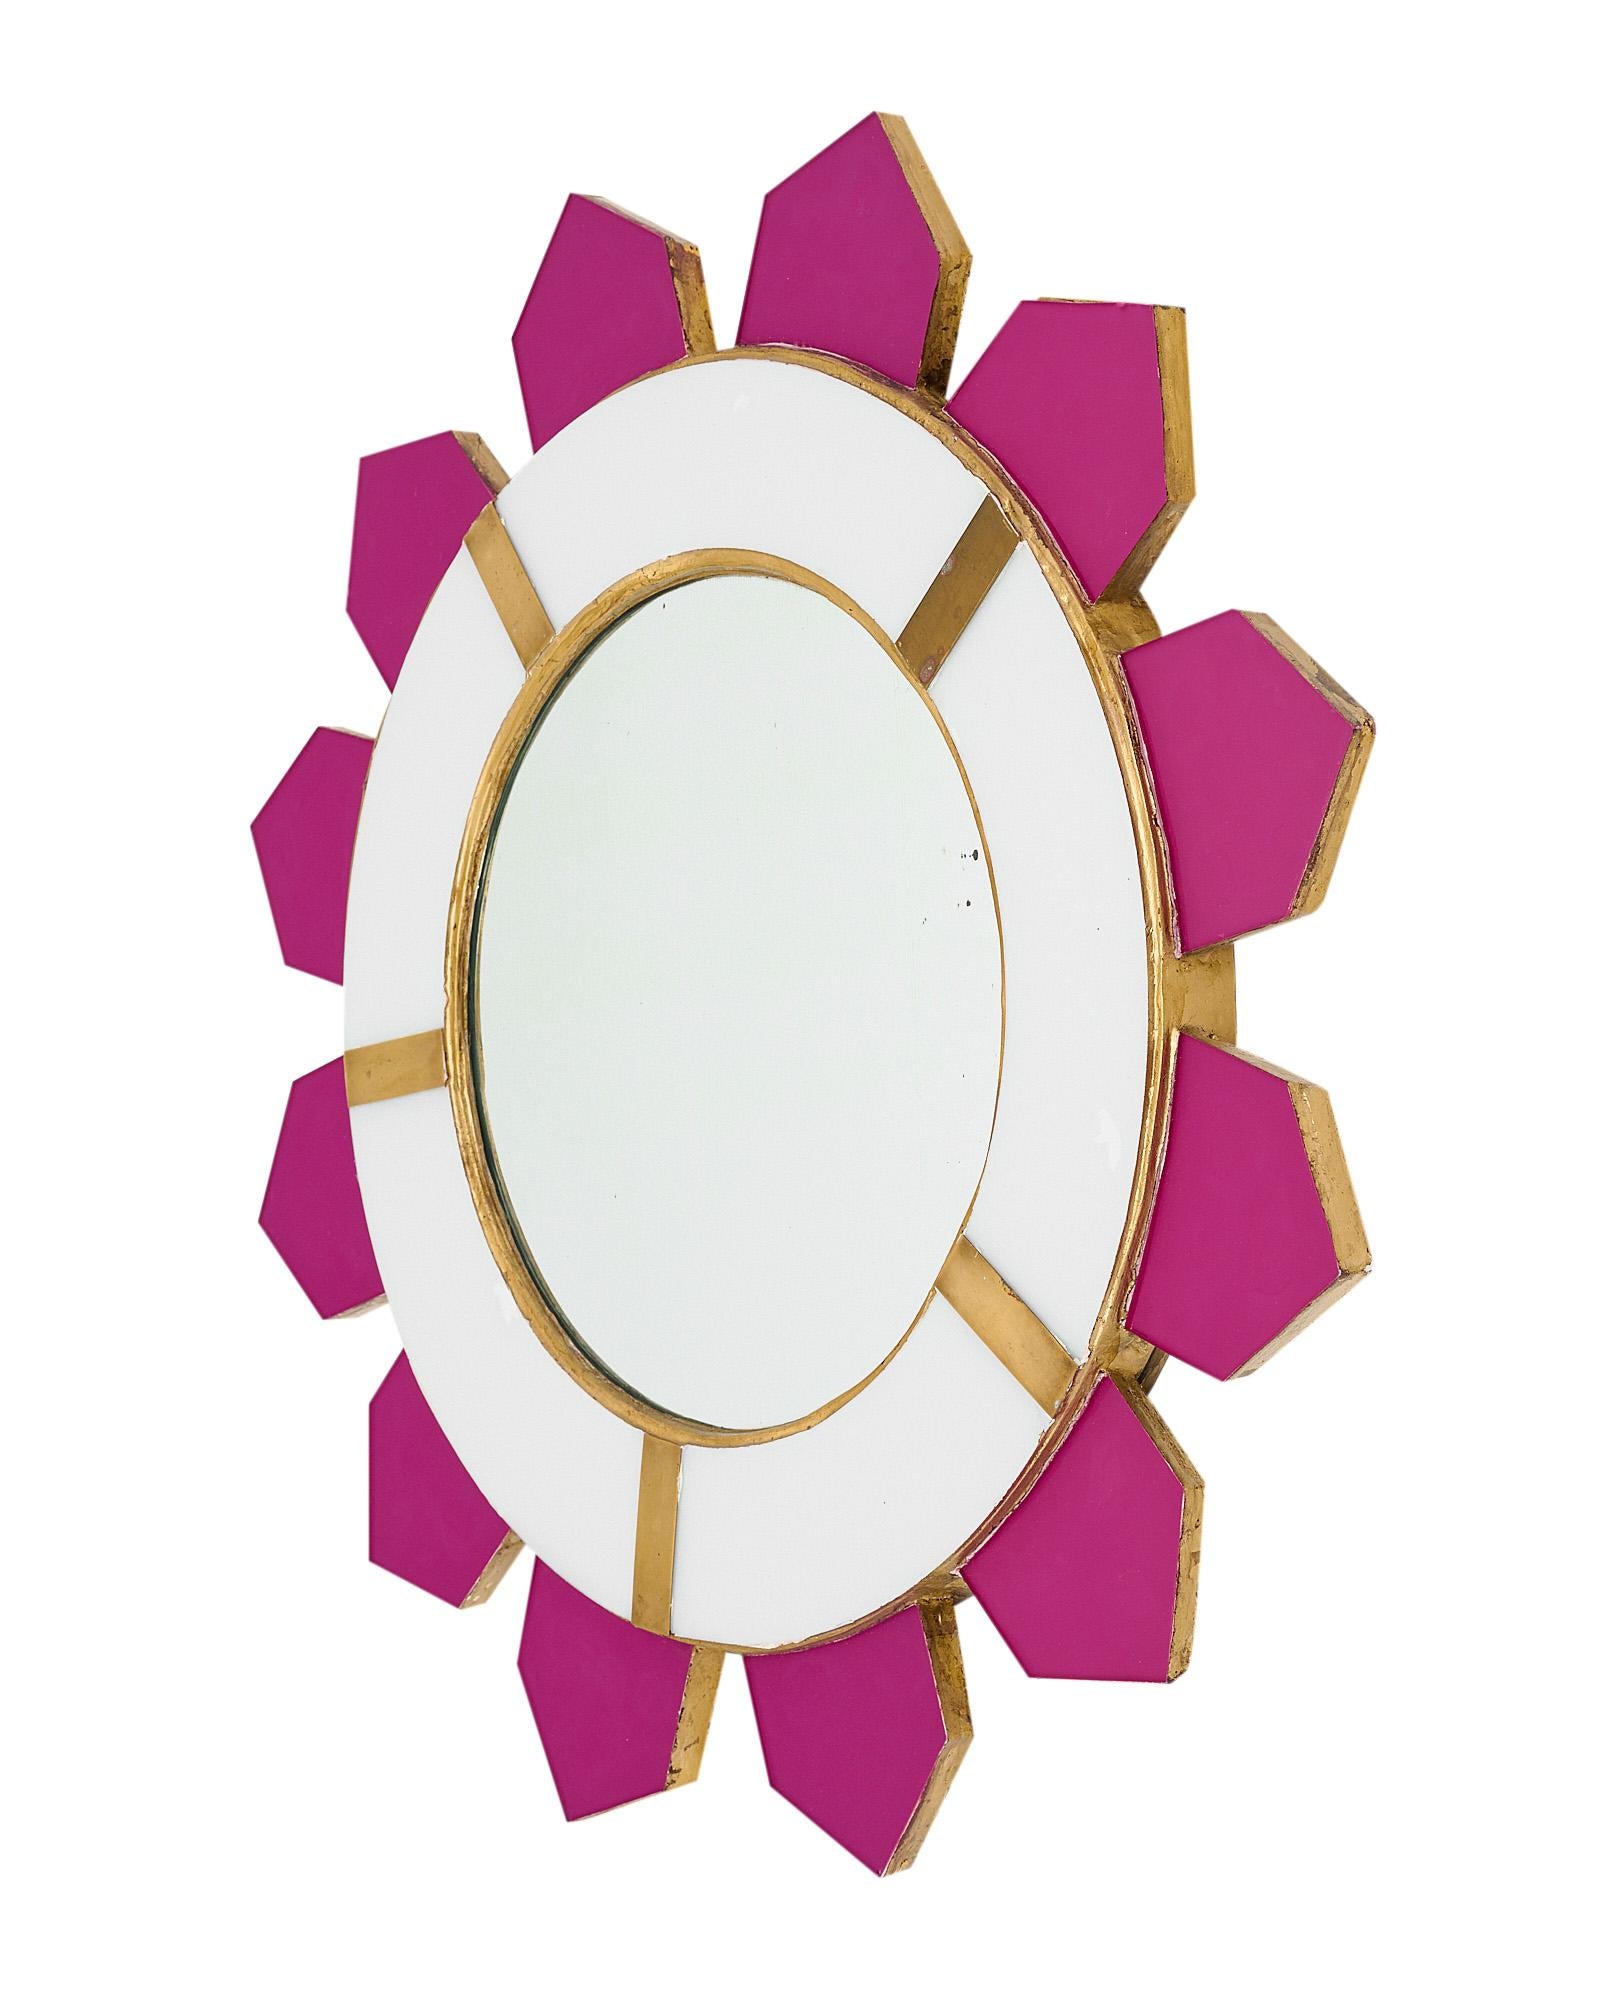 Modernistische Sonnenbrille mit Holzstruktur und rosafarbenen, mit Glas furnierten Strahlen, die von einem zentralen, runden Spiegel ausgehen. Der zentrale Spiegel ist mit weißen Glaselementen und Messingdekor umrahmt. Wir lieben das starke